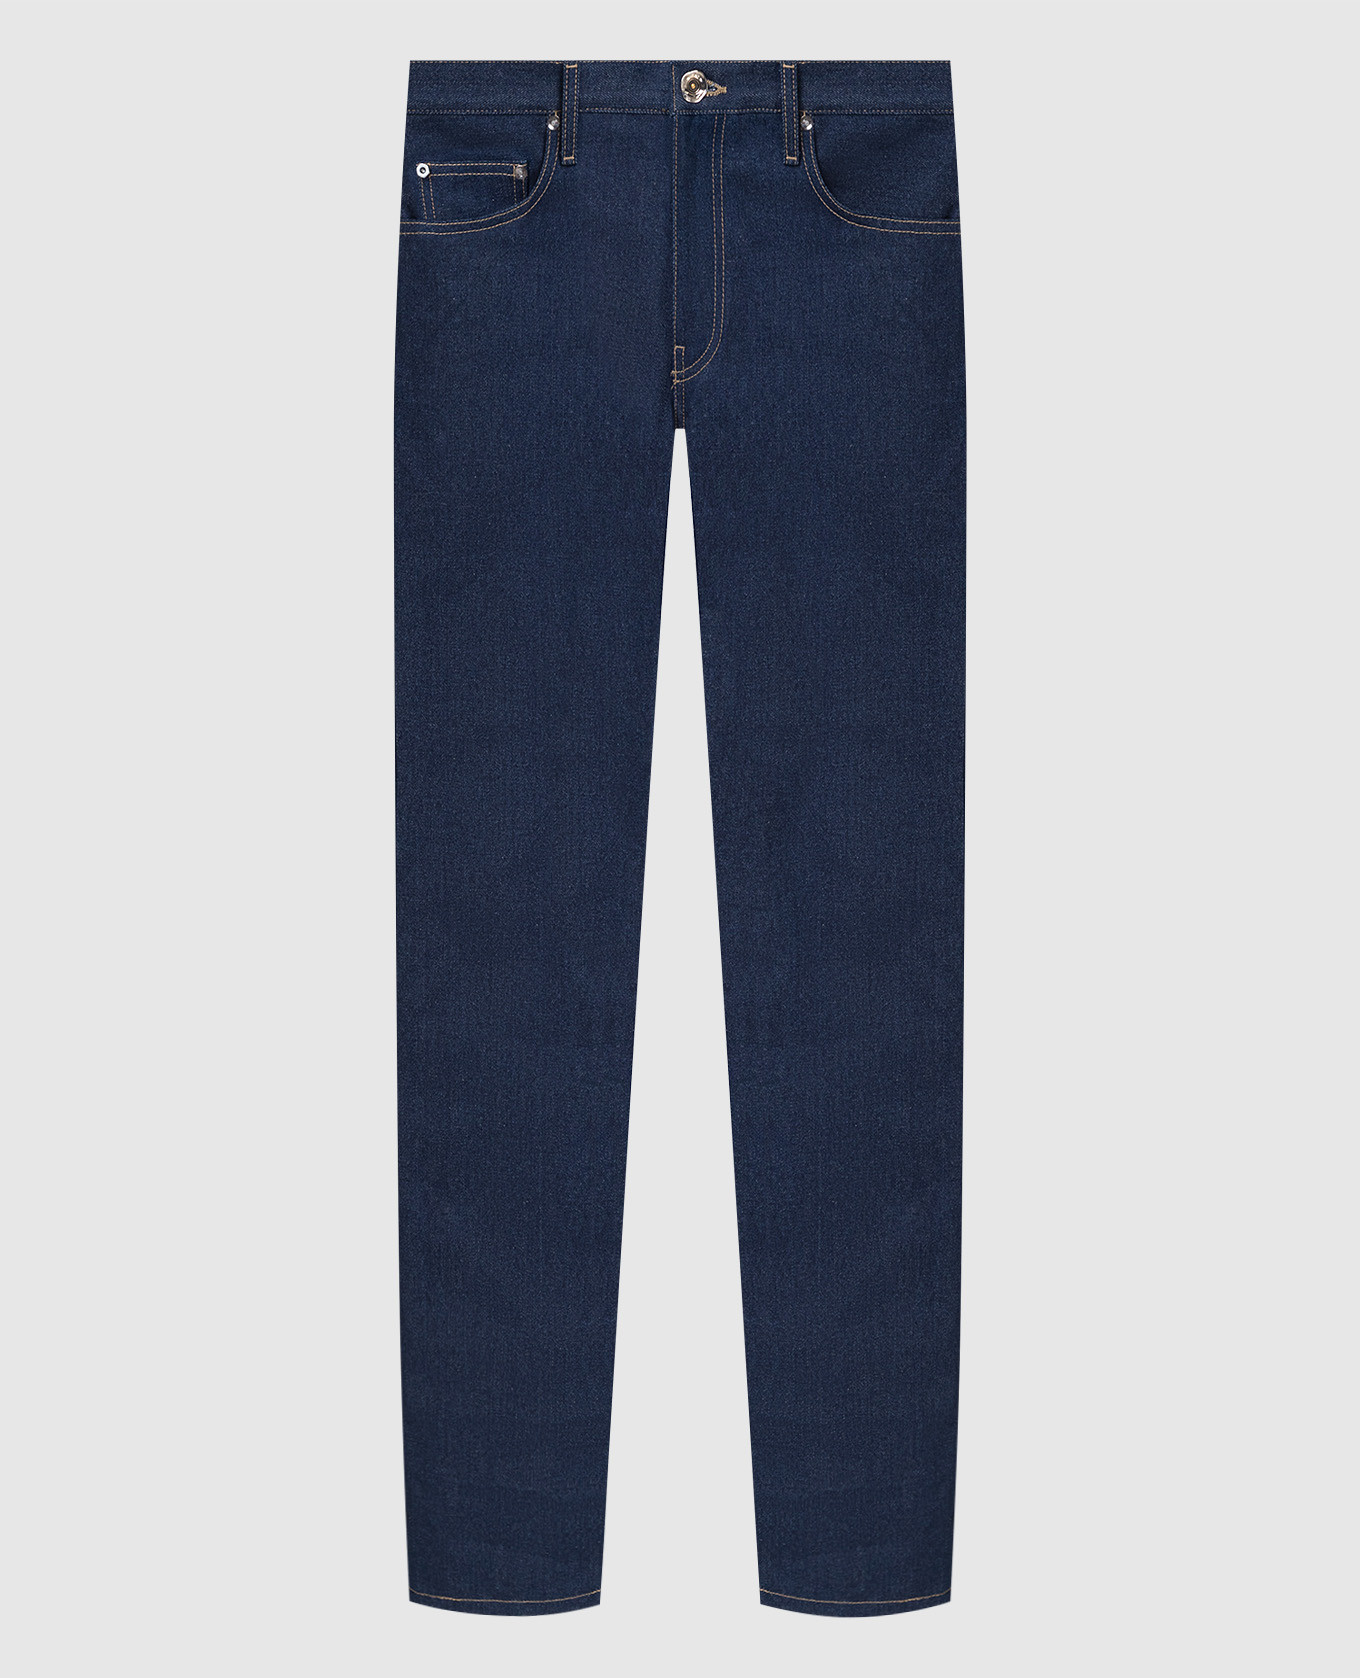 Темно-синие джинсы-слим с вышивкой Diag Outline